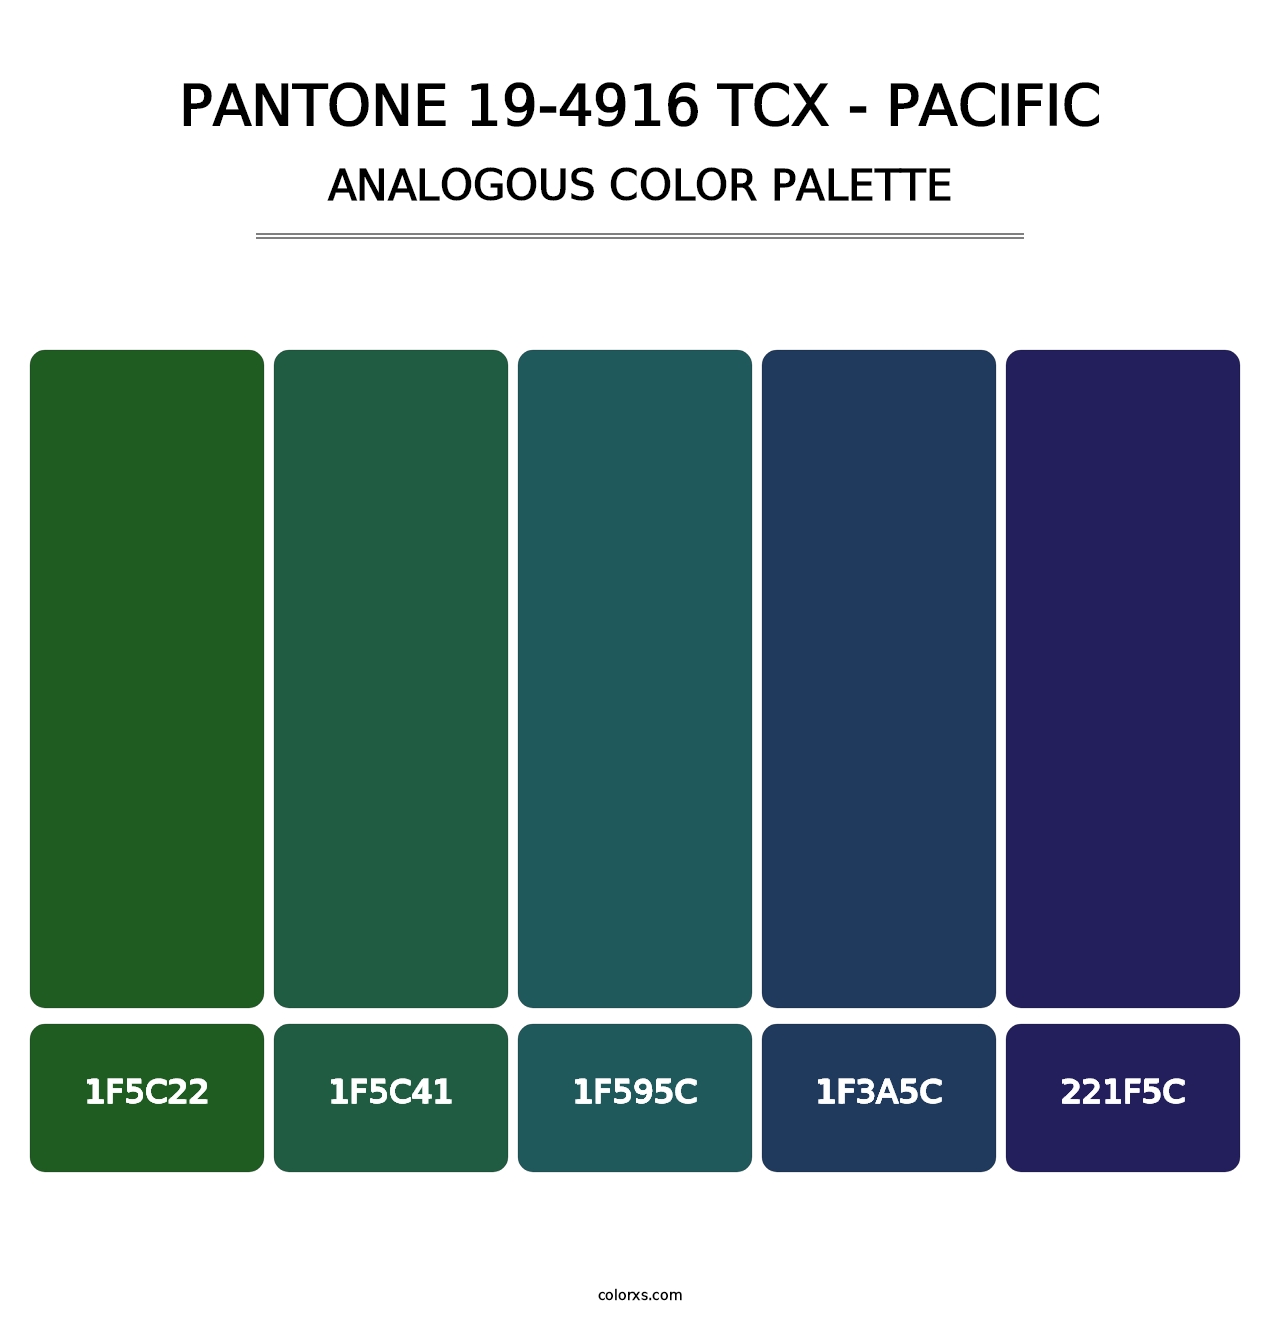 PANTONE 19-4916 TCX - Pacific - Analogous Color Palette